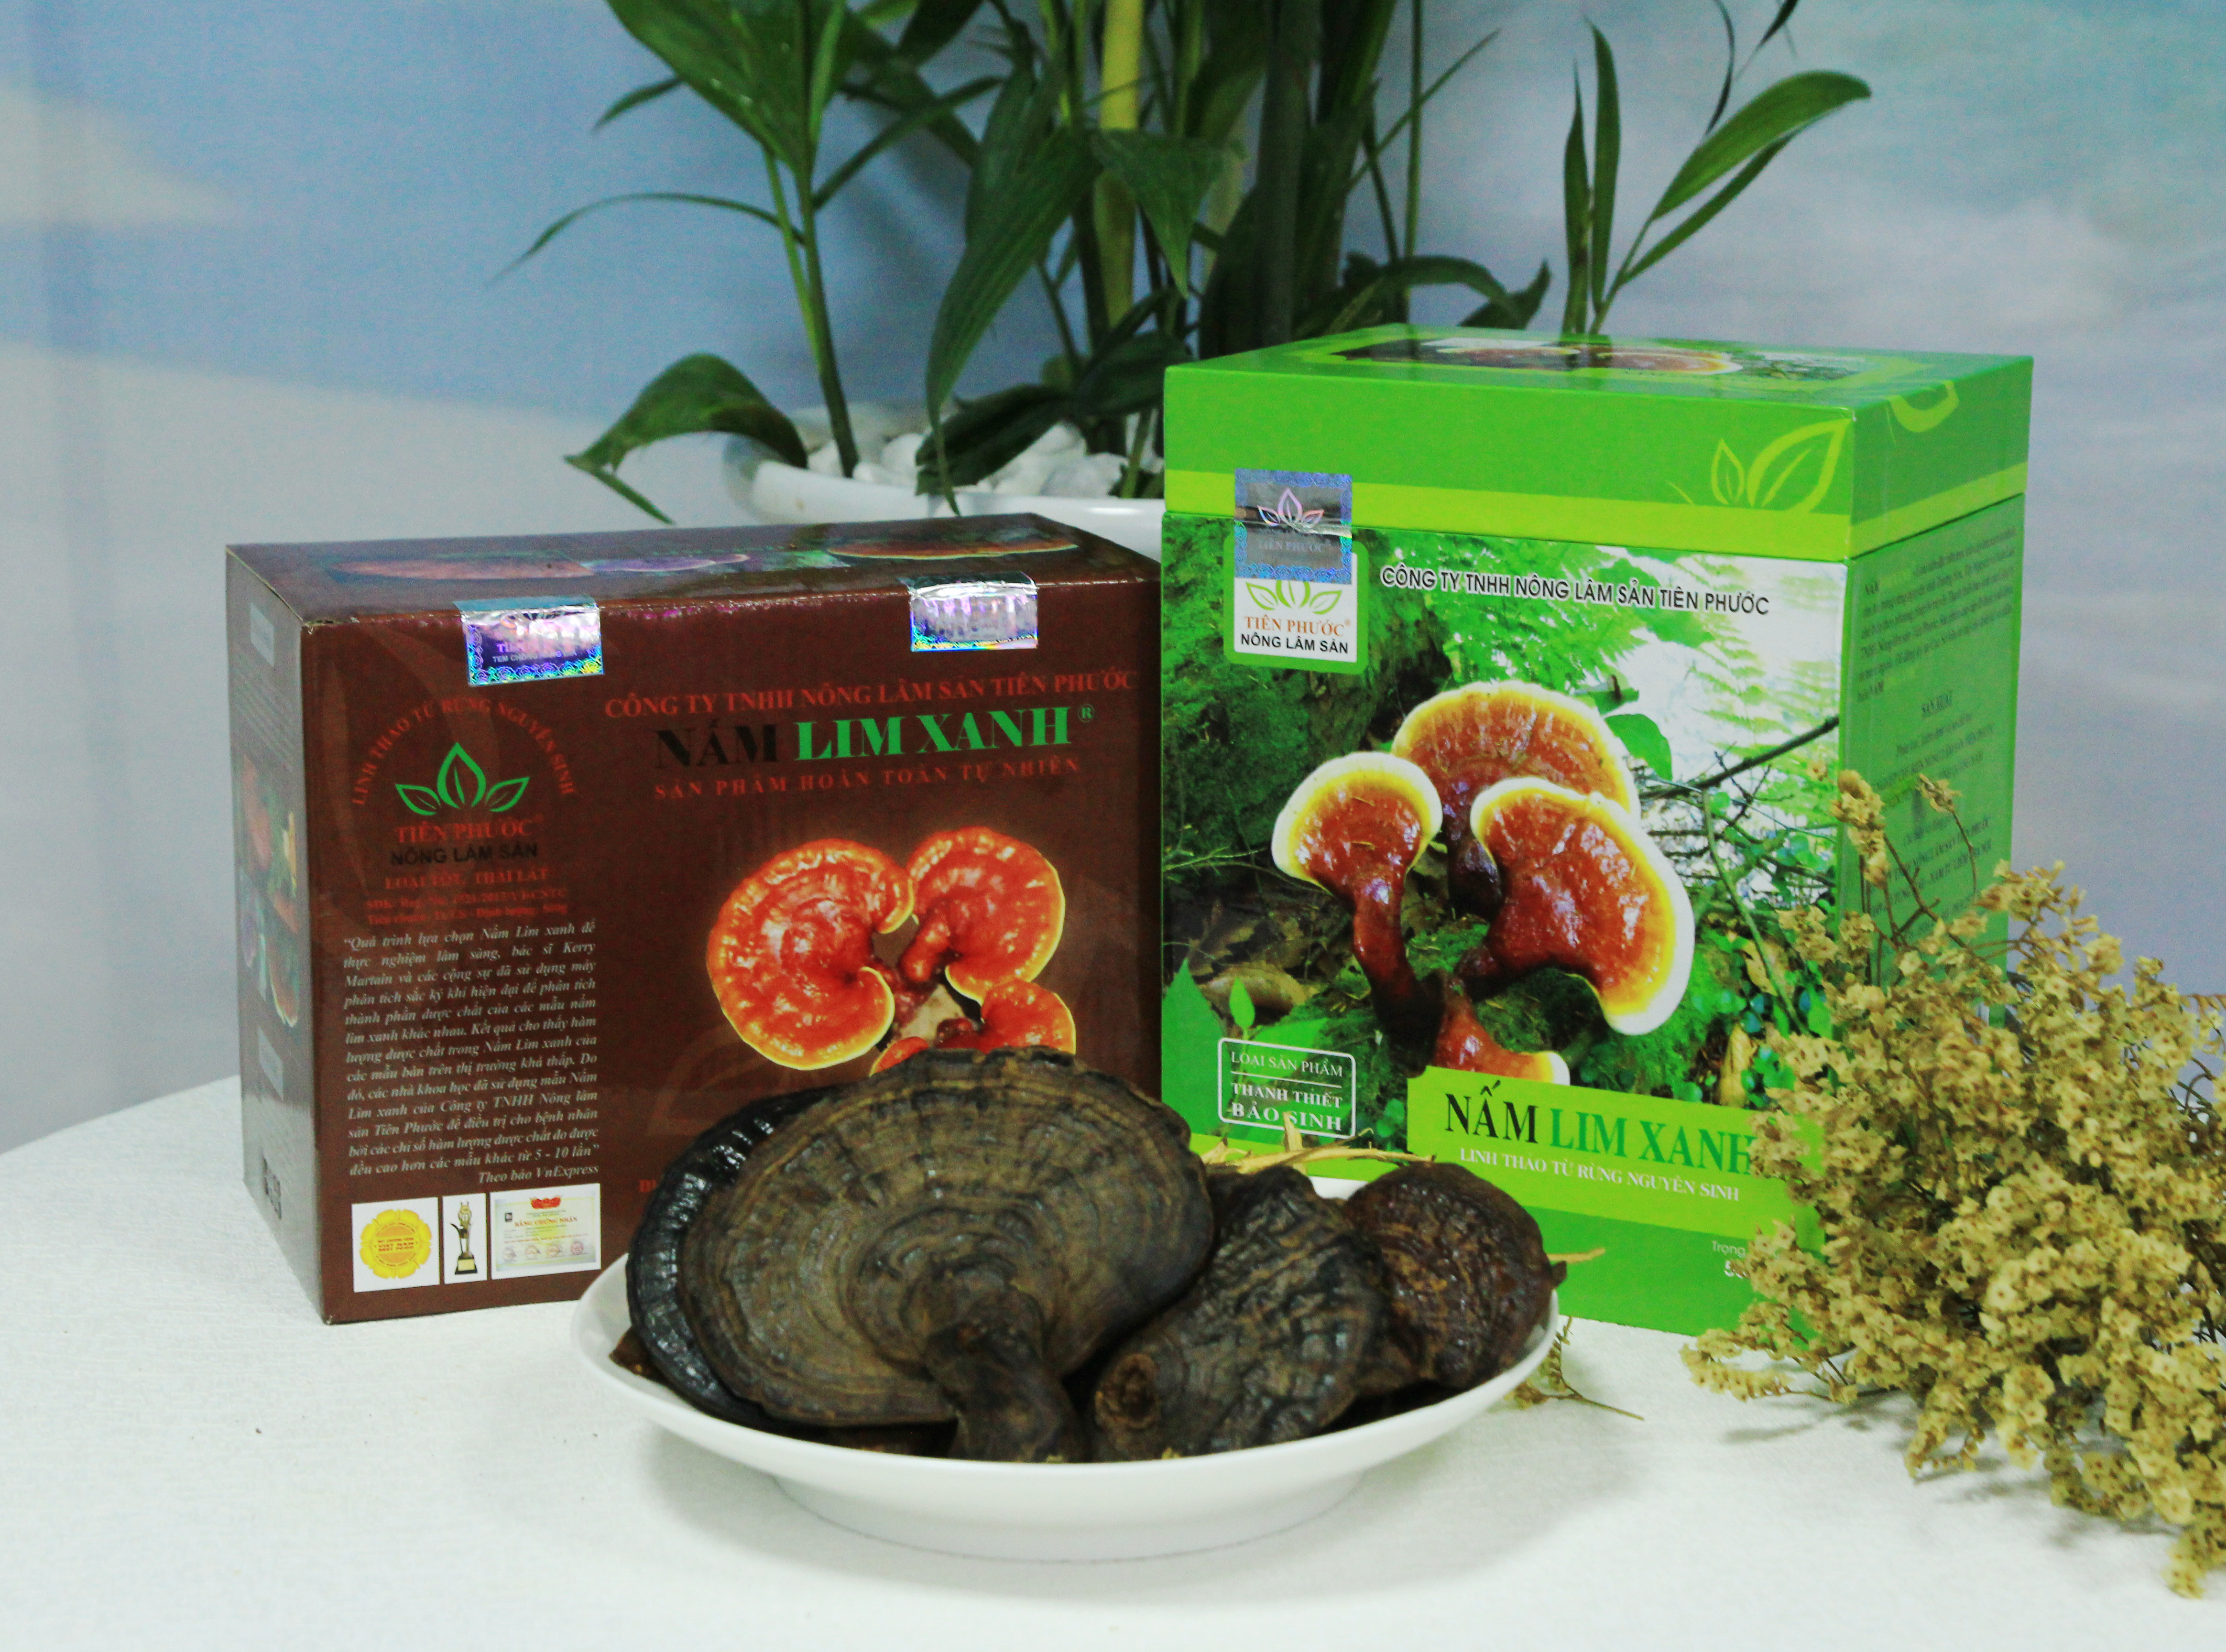 Đại lý bán nấm lim xanh tại Thái Bình cung cấp sản phẩm nấm lim xanh rừng tự nhiên